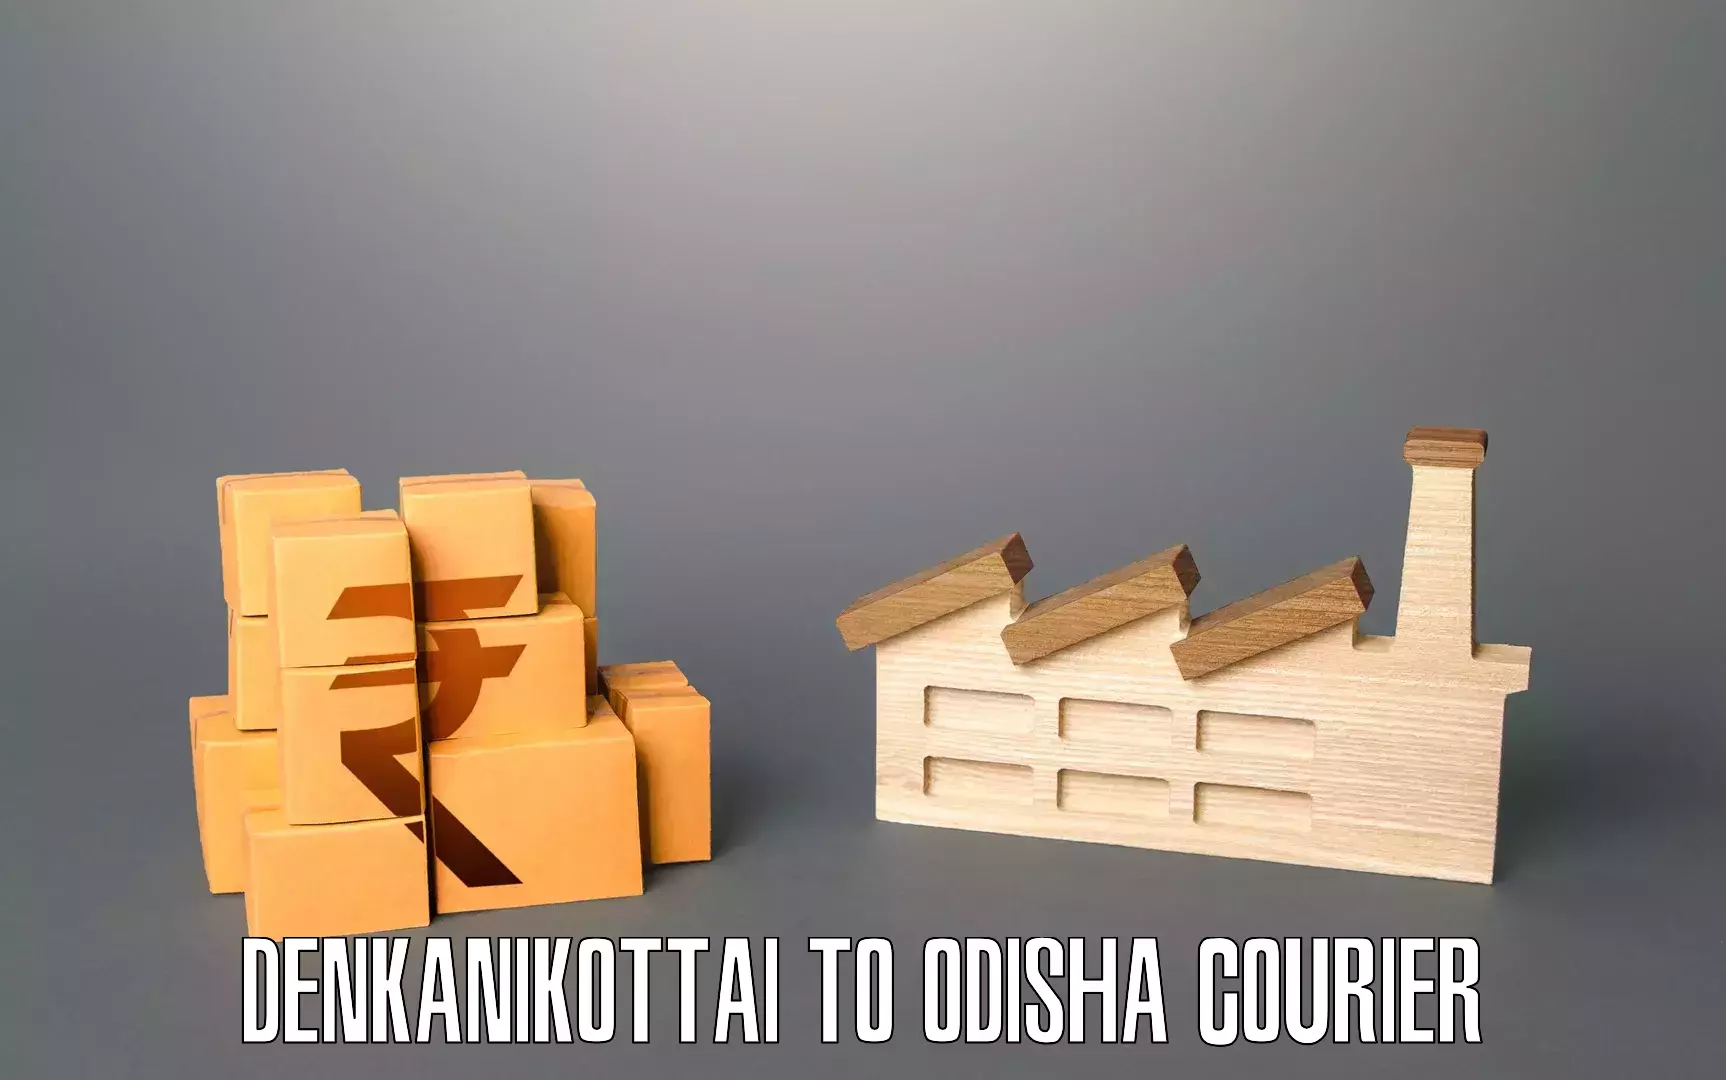 Furniture moving plans Denkanikottai to Balugaon